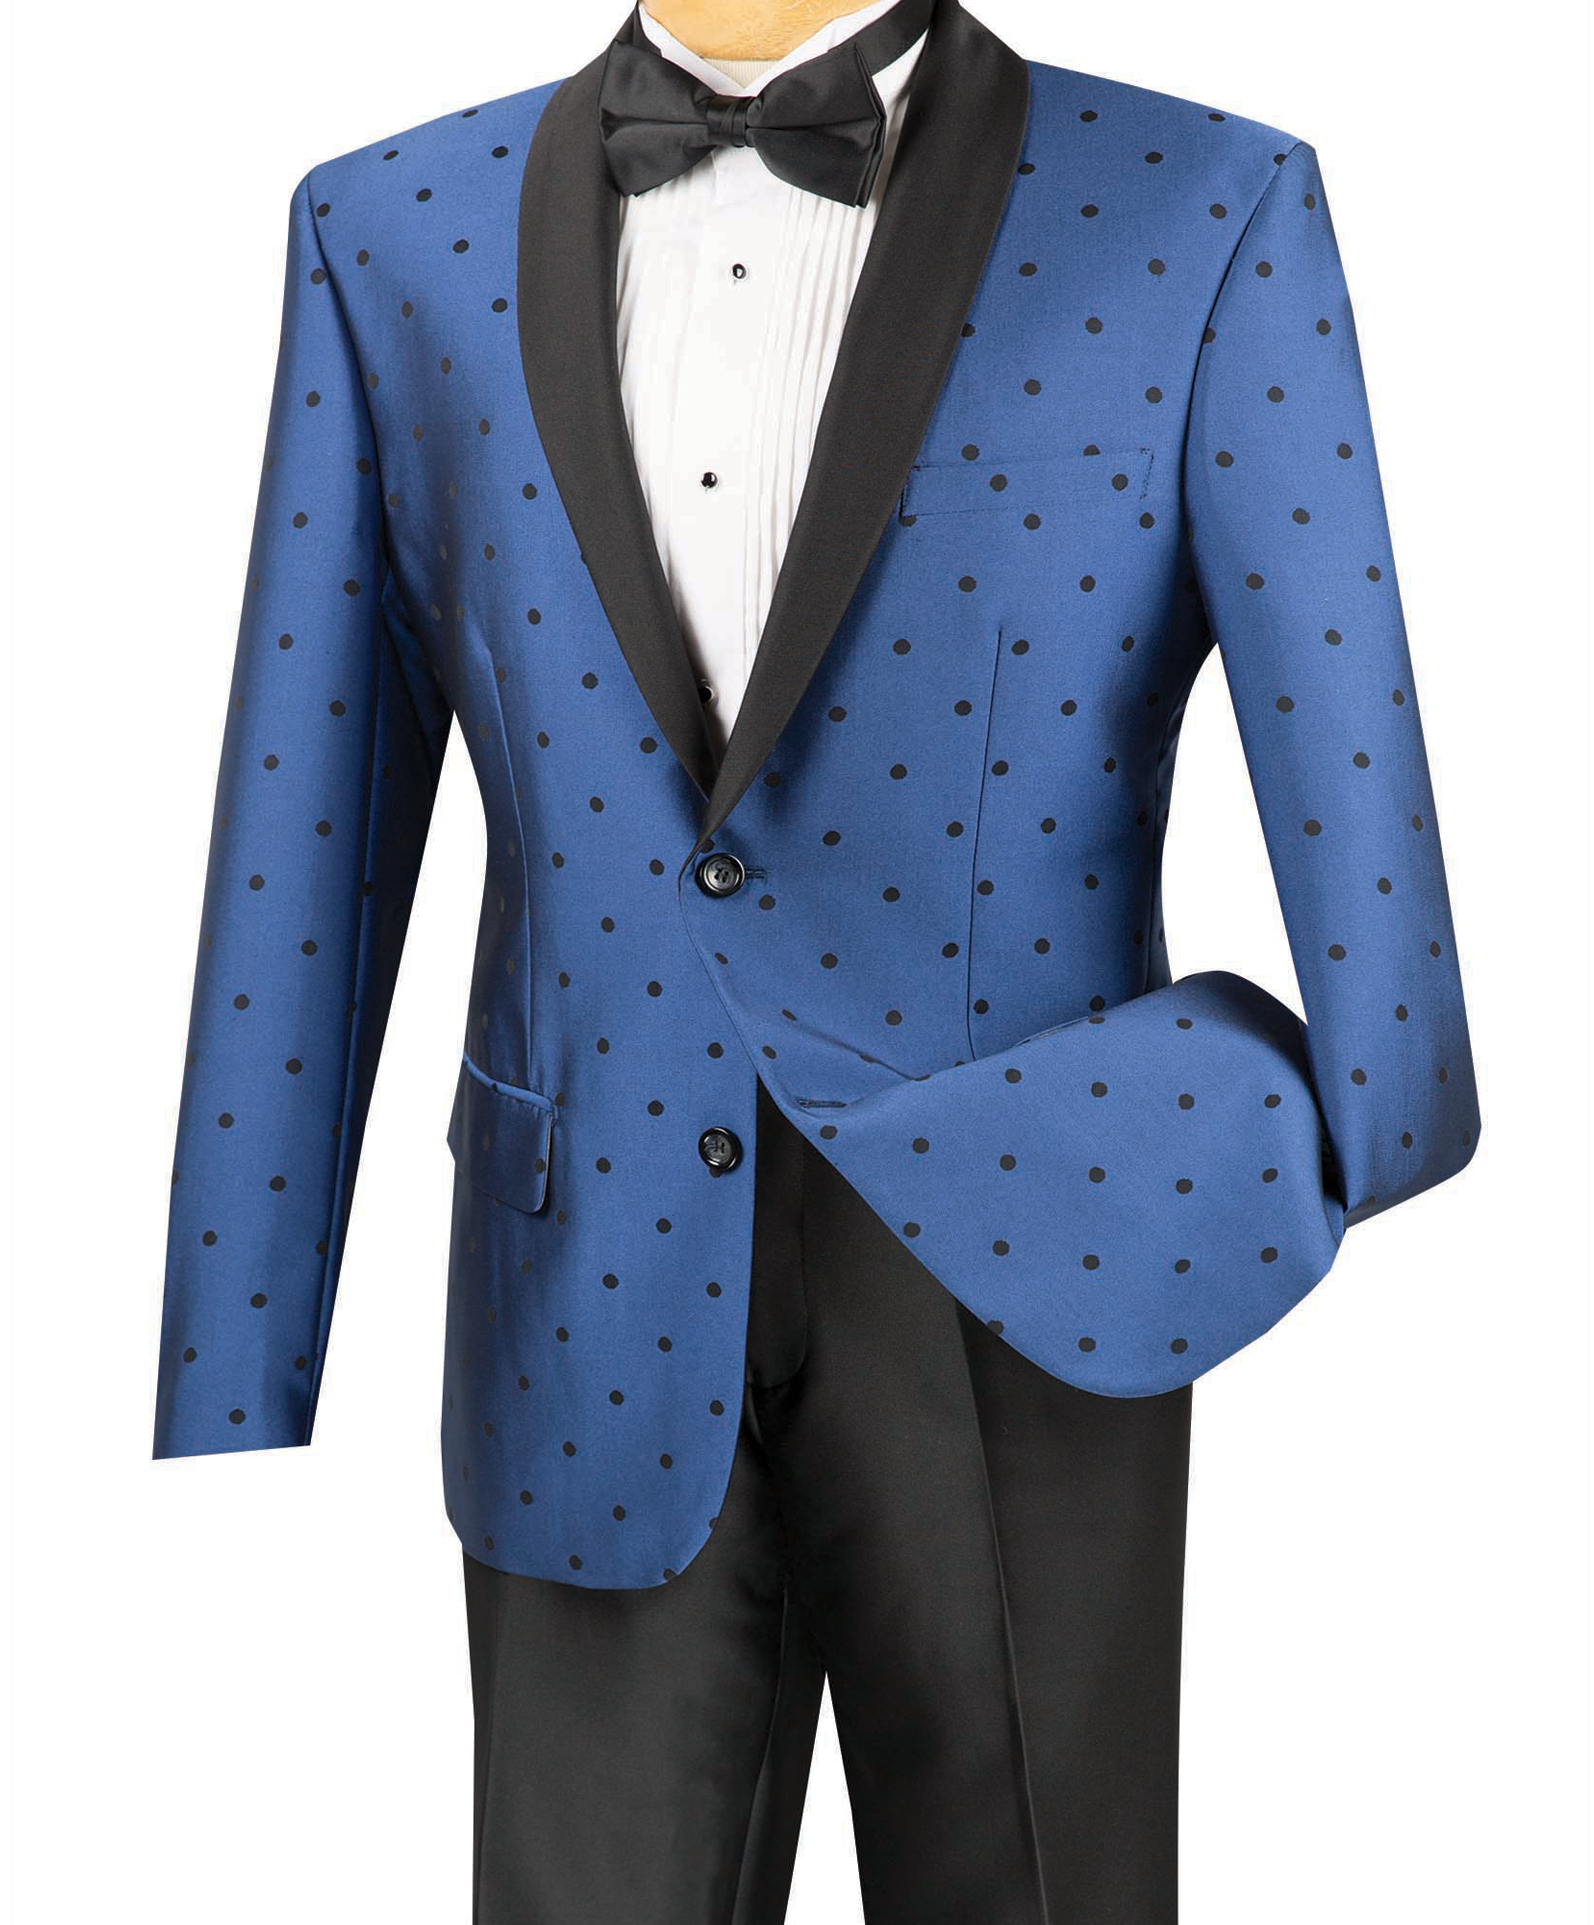 (46R) Polka Dots Fashion Suit 2 Pieces Slim Fit Blue